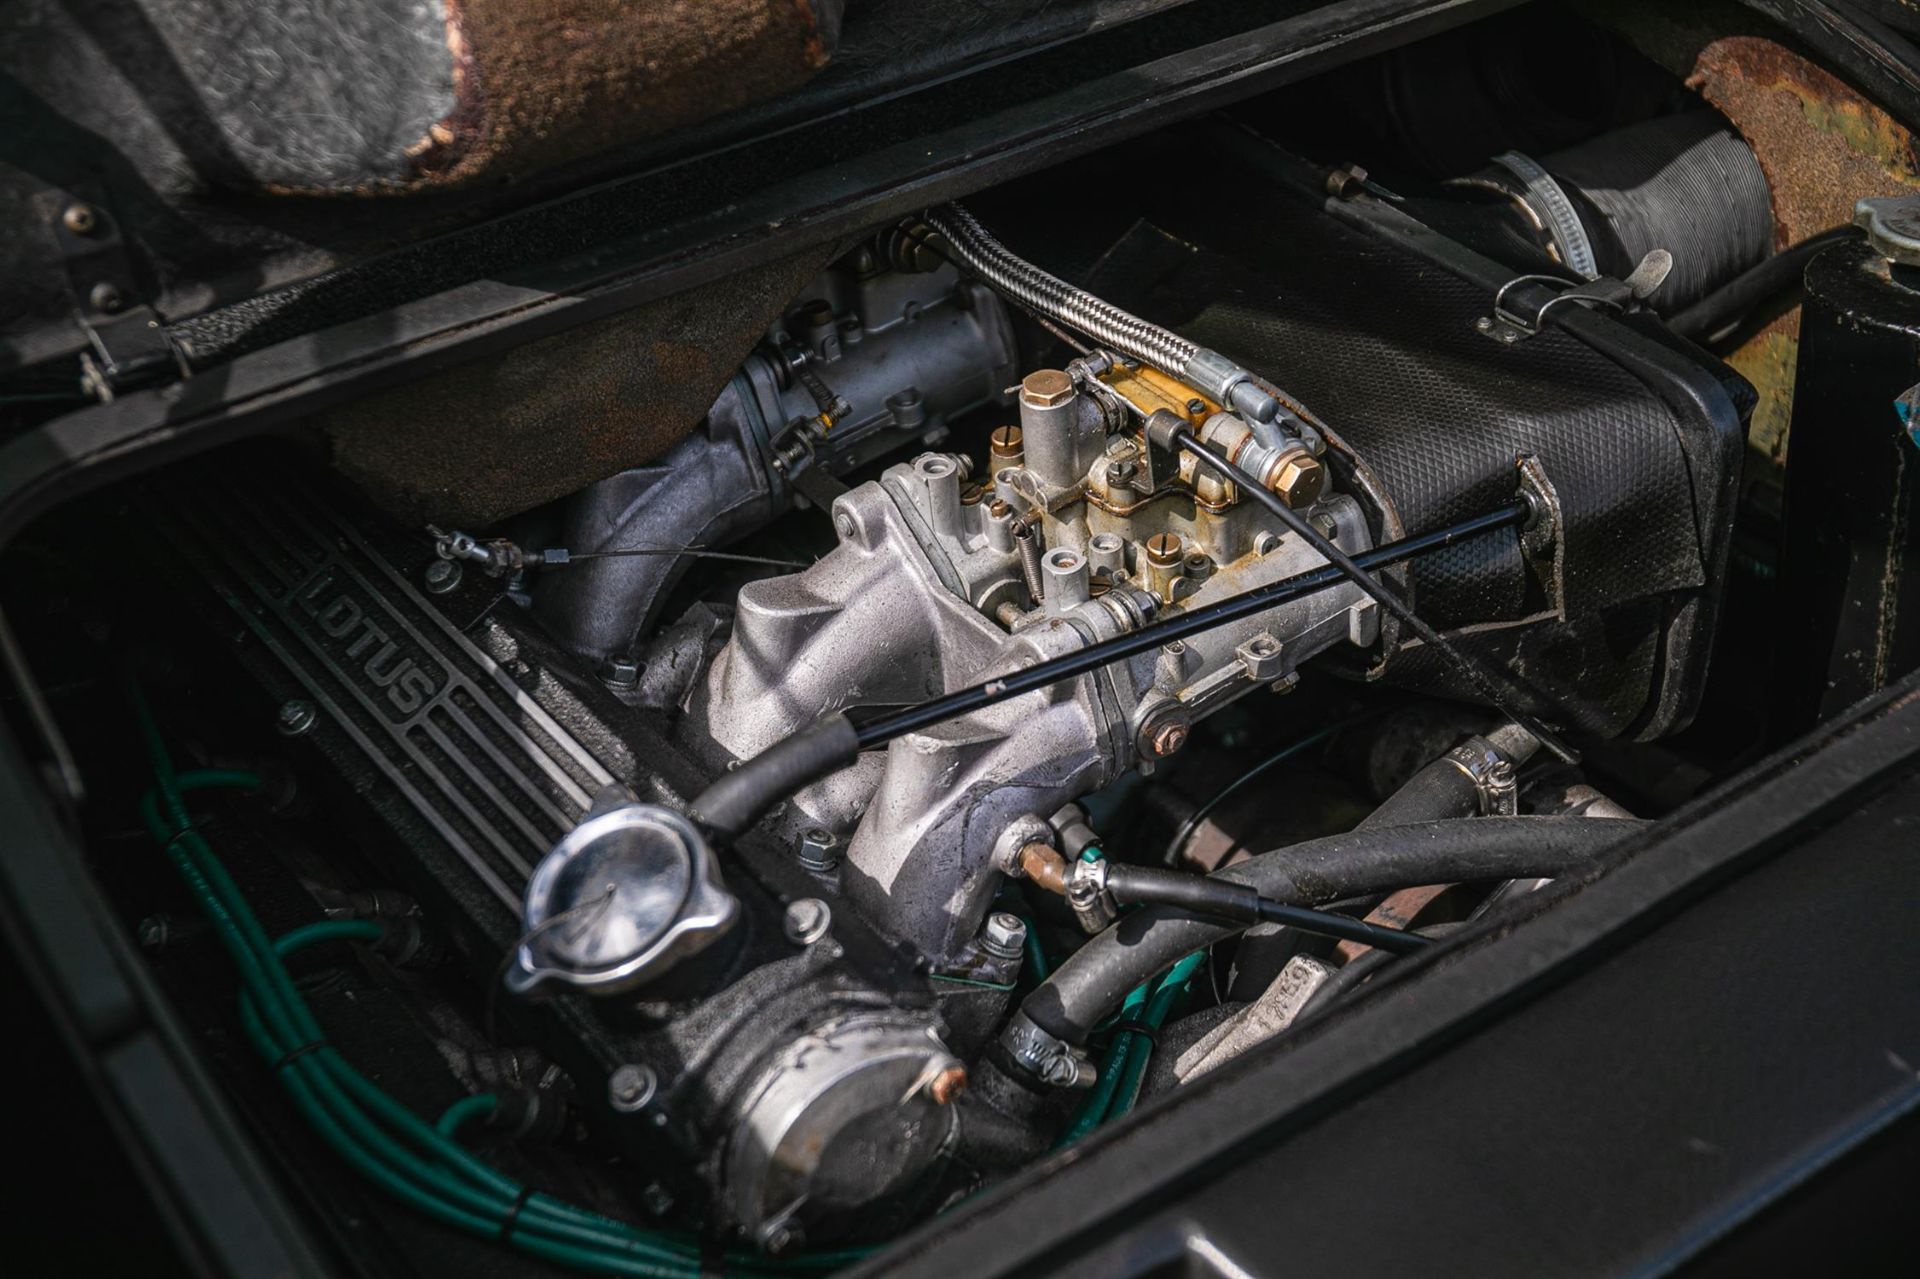 1980 Lotus Esprit S2.2 - Image 3 of 10